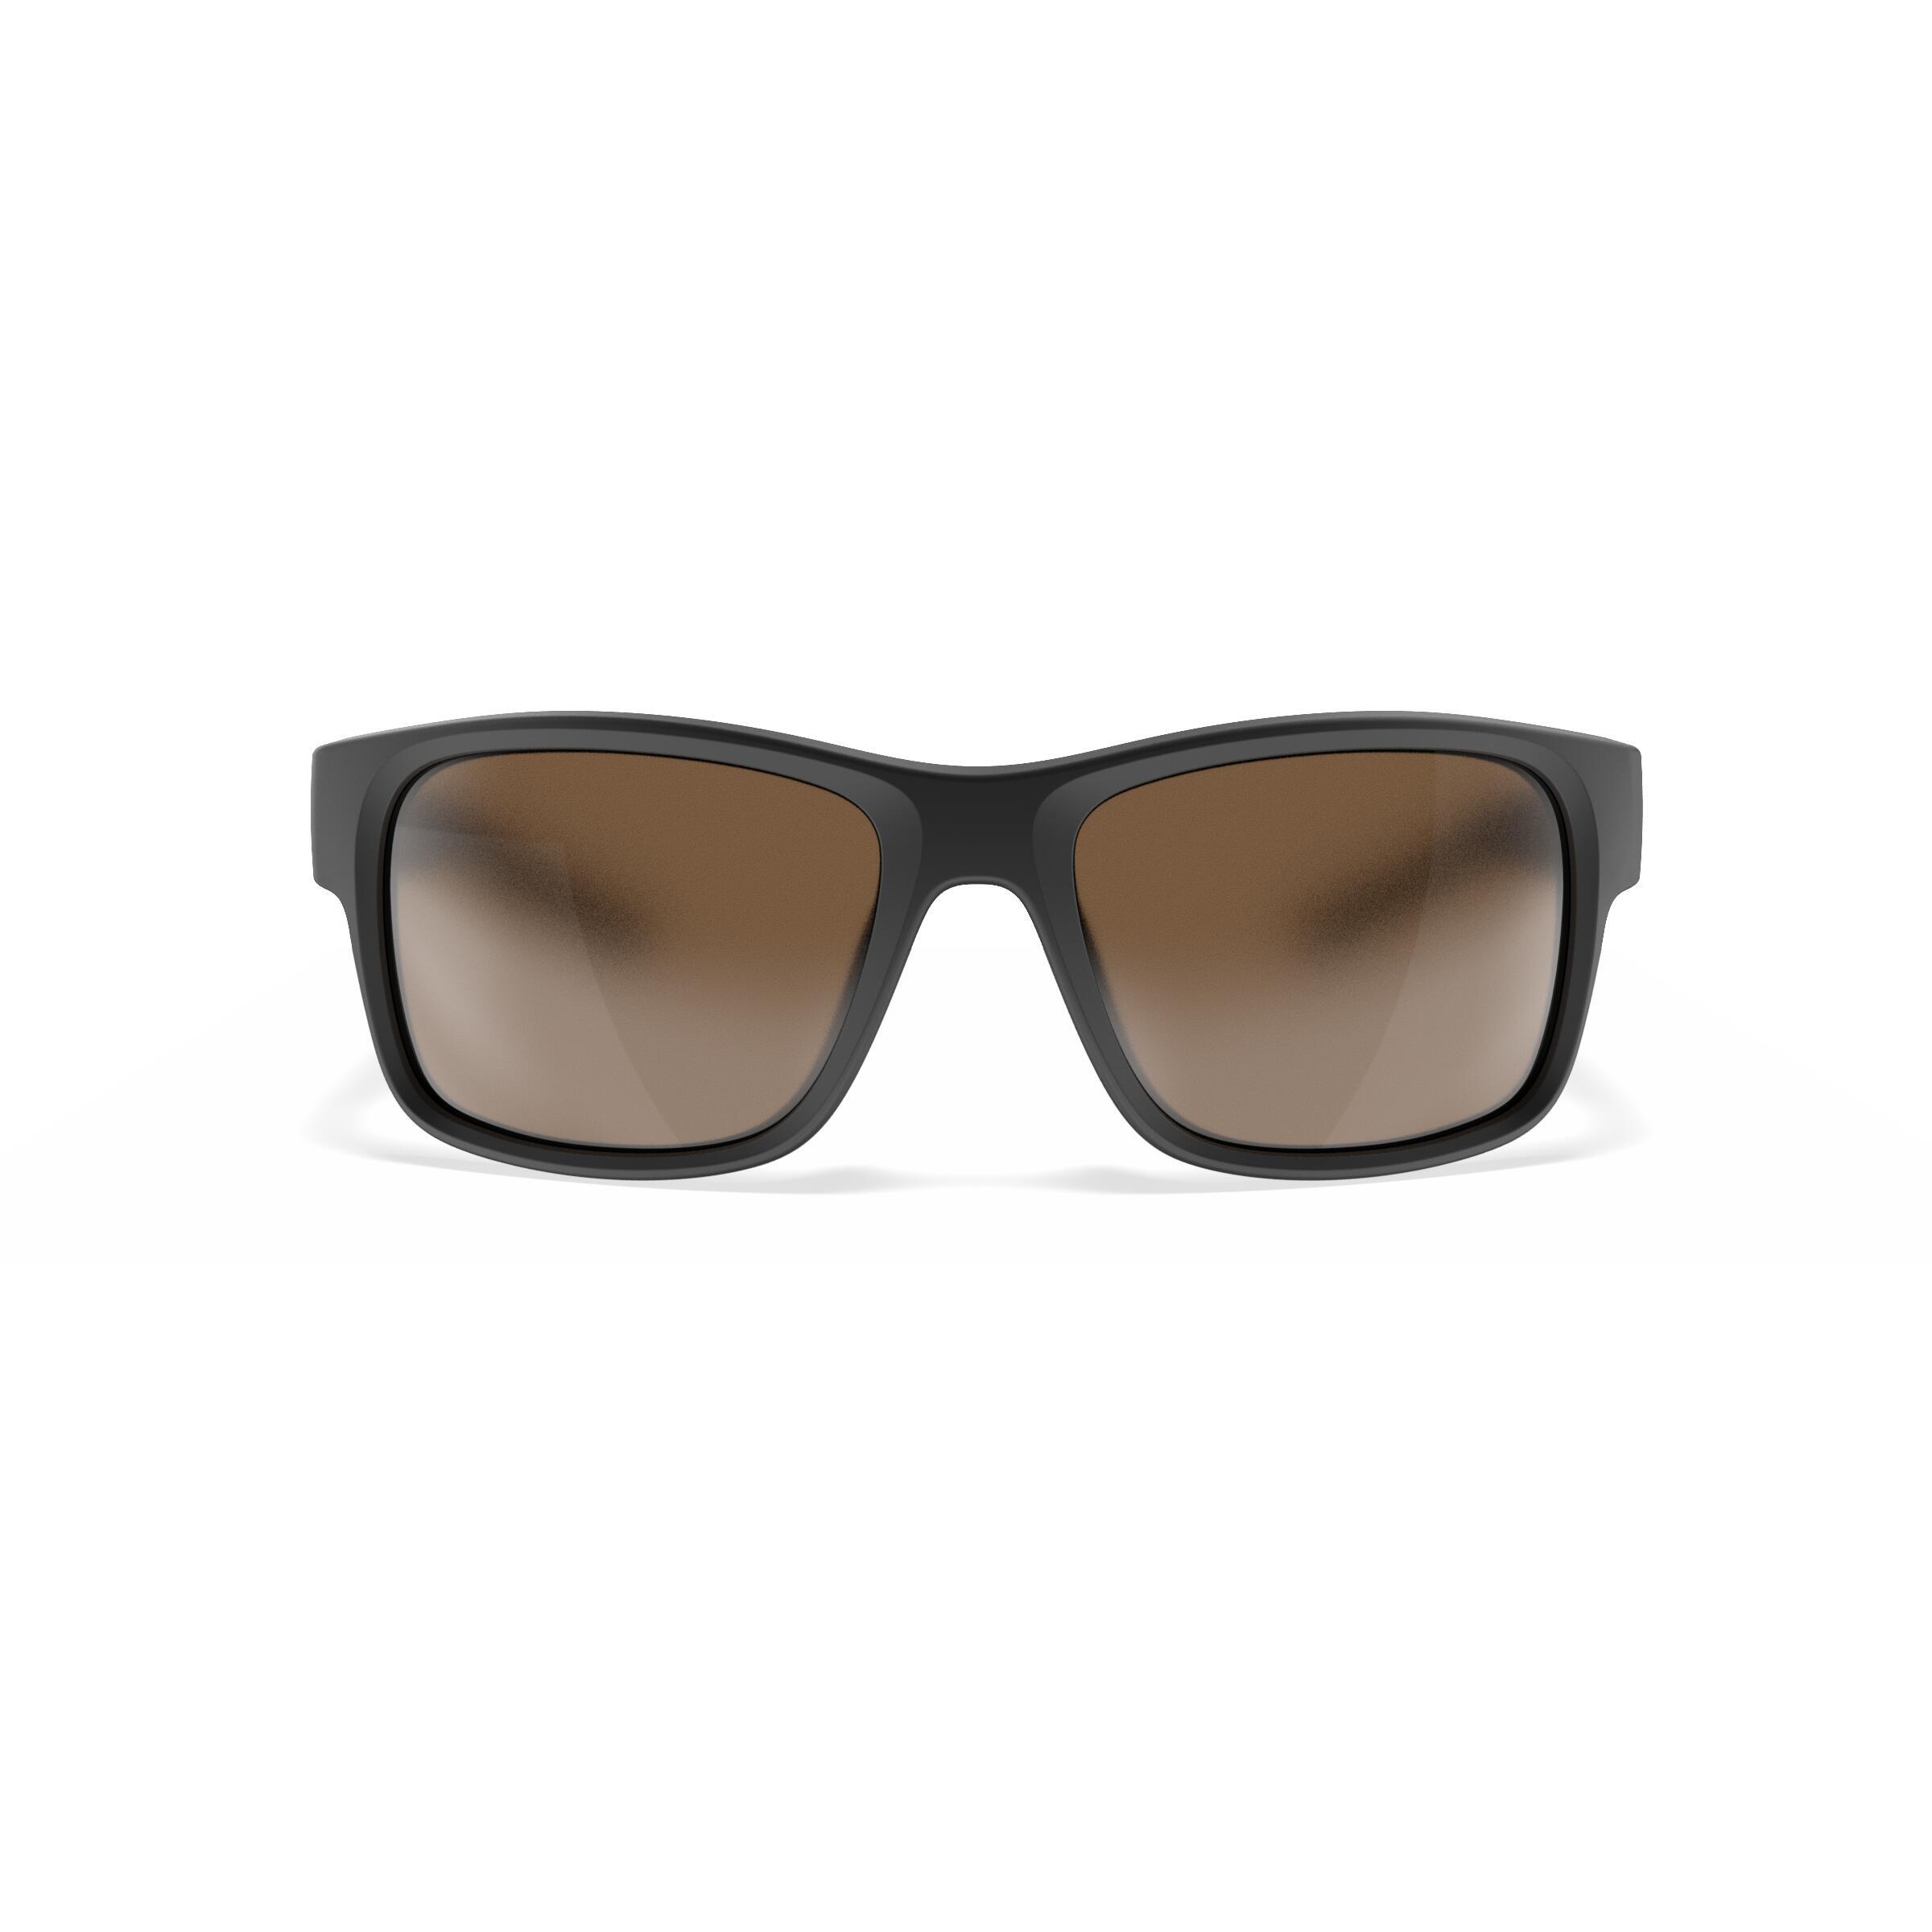 Sailing Floating Polarised Sunglasses SAILING 100 Size S Black 7/9